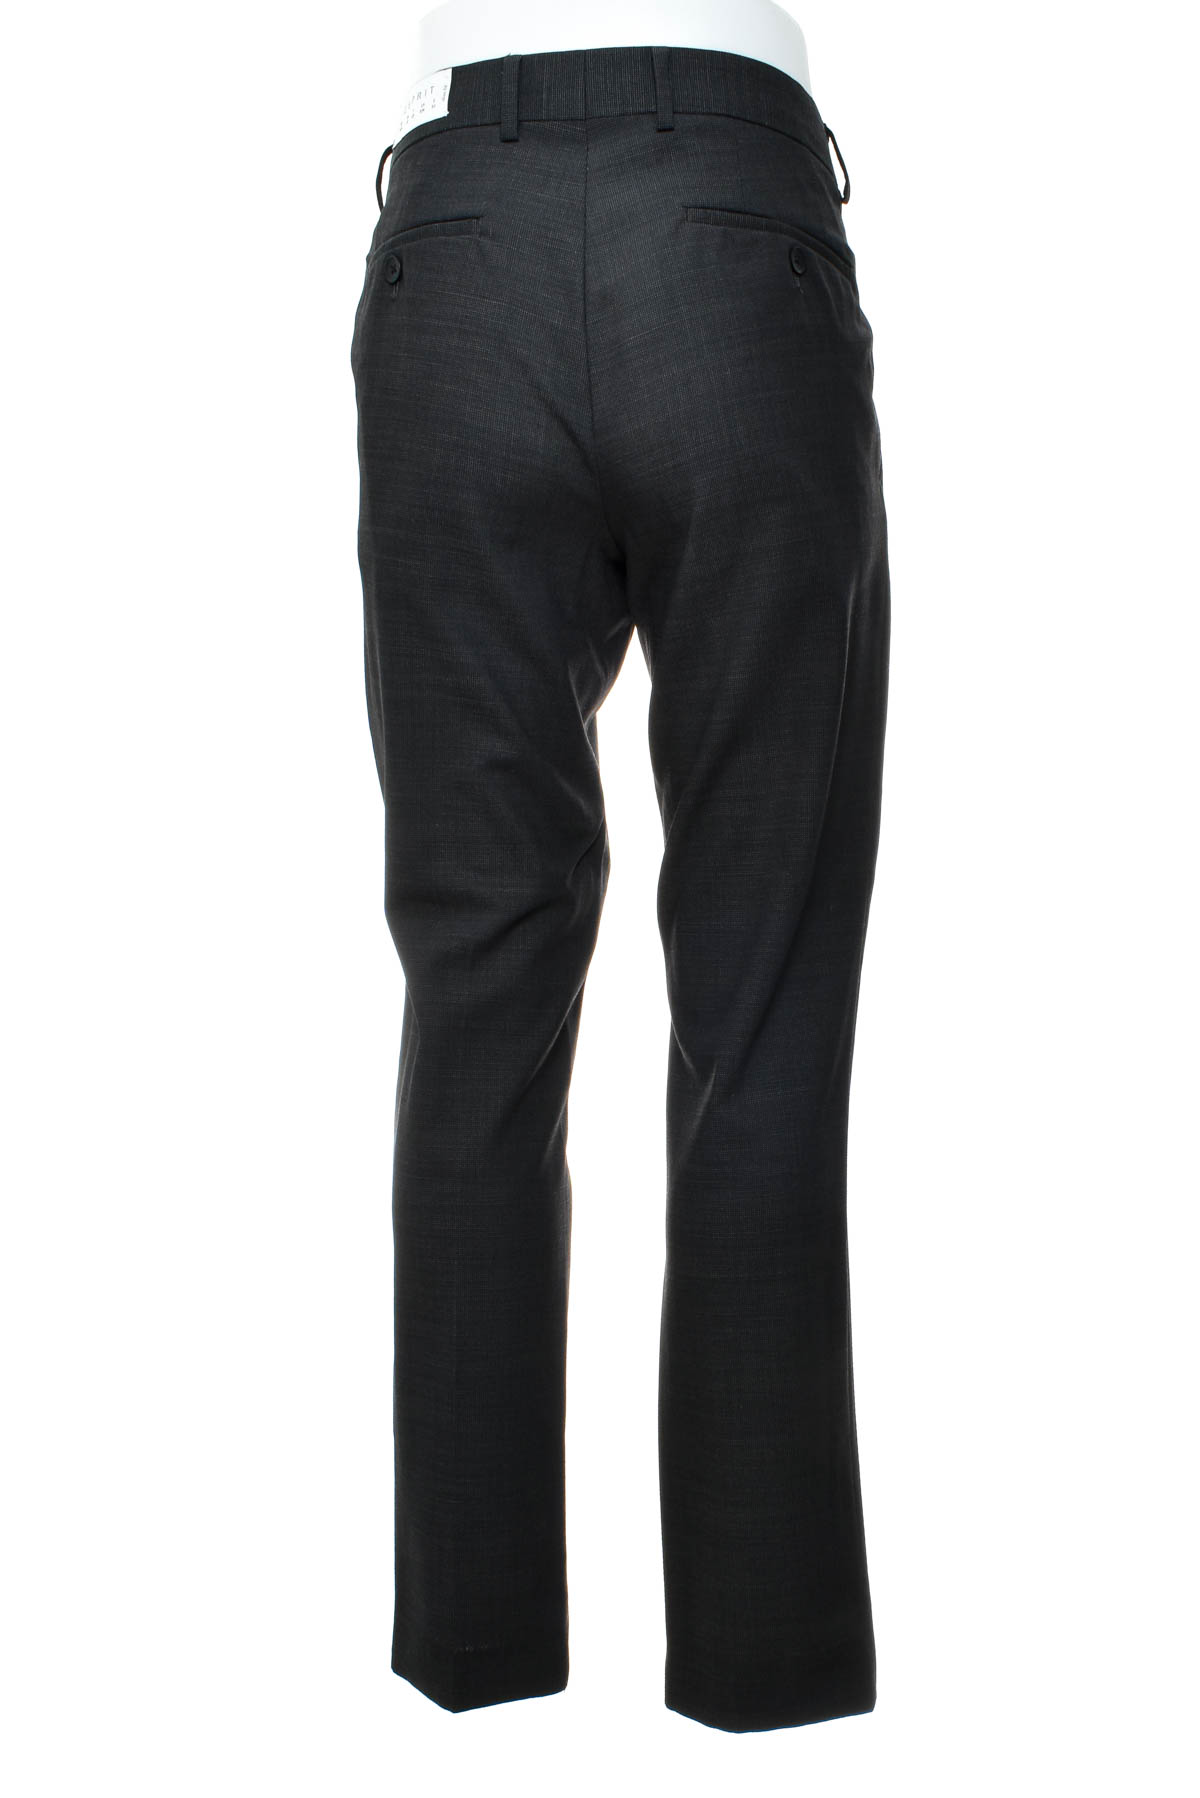 Men's trousers - ESPRIT - 1